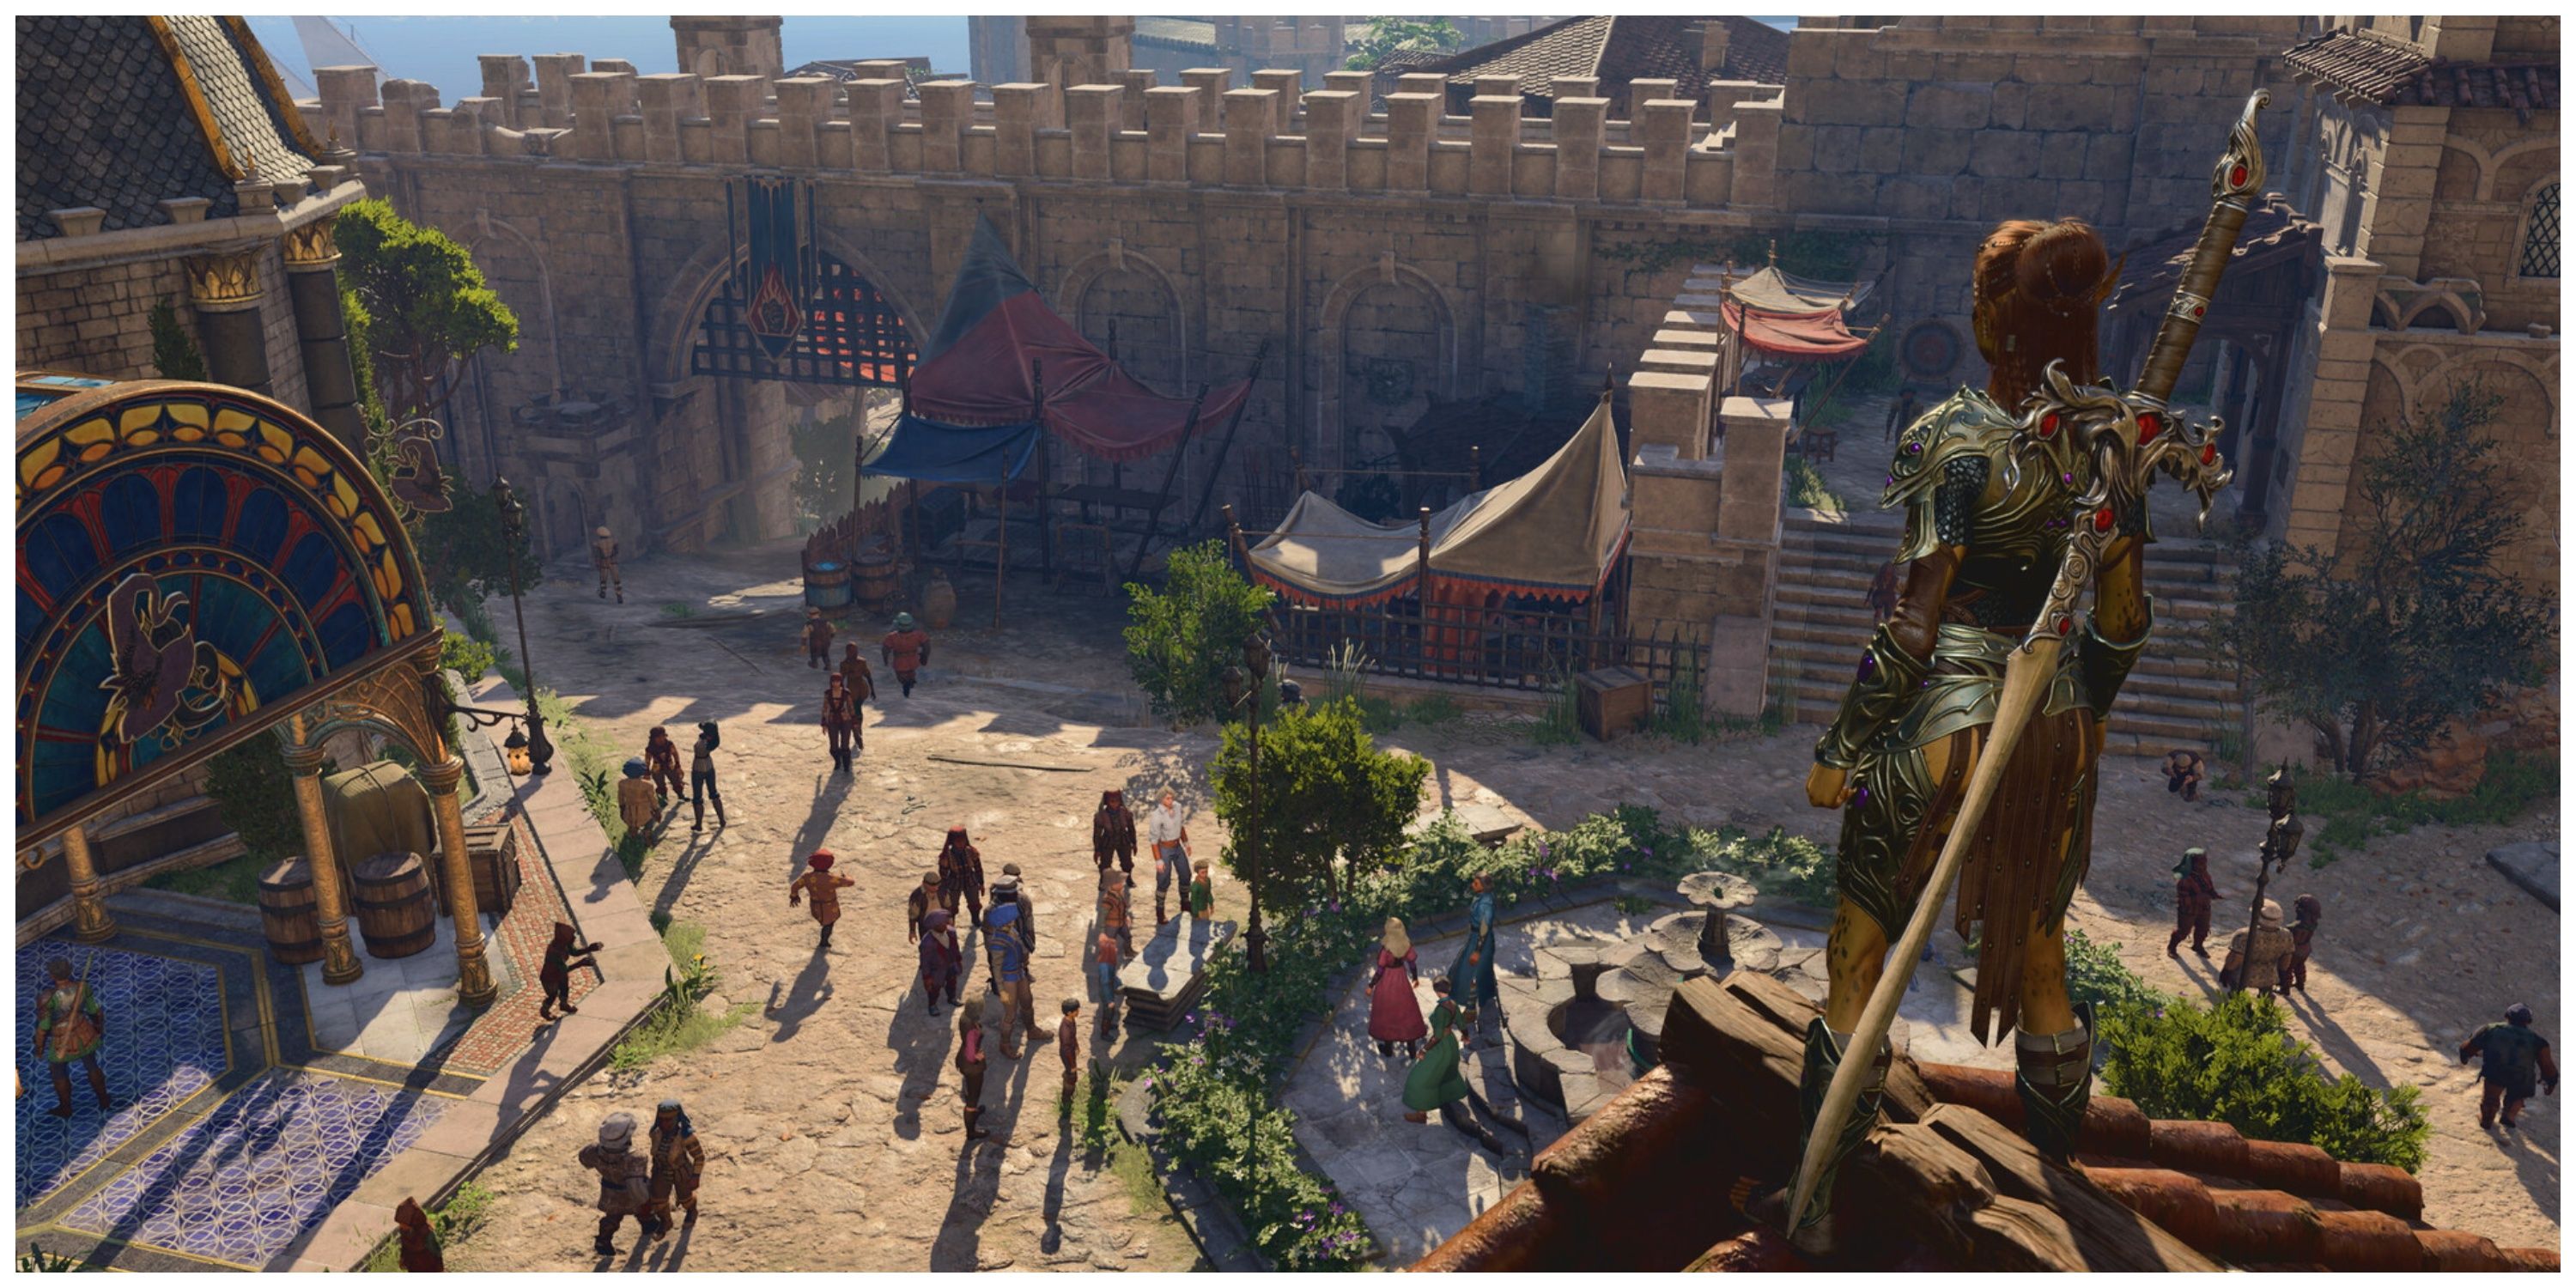 Baldur's Gate 3 - Overlooking A Courtyard